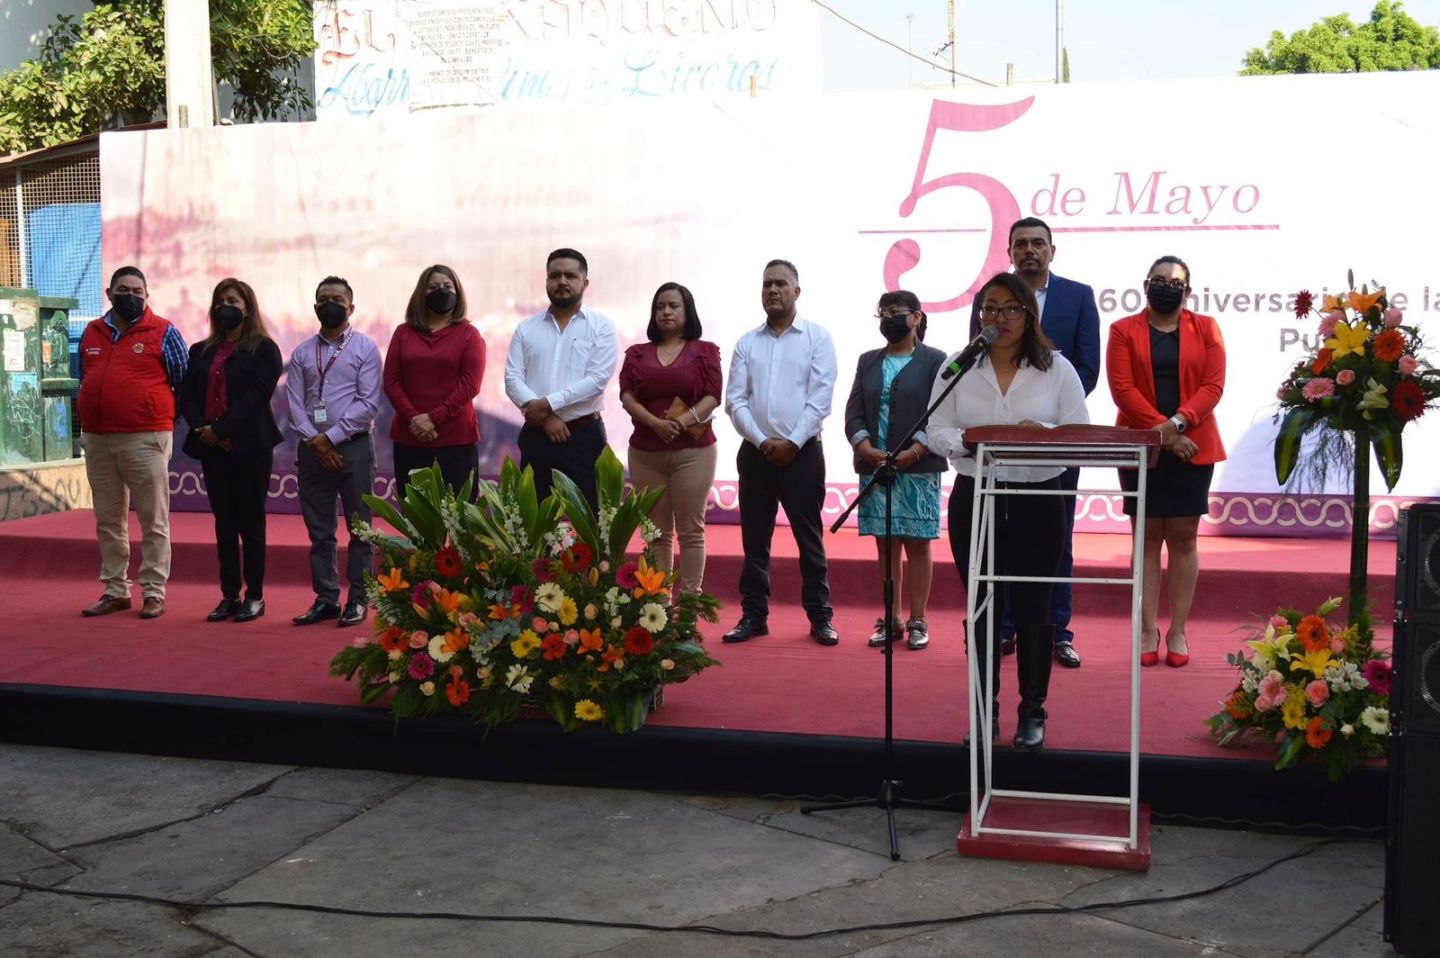 #Chimalhuacán conmemoro el 160 aniversario de la batalla de Puebla
